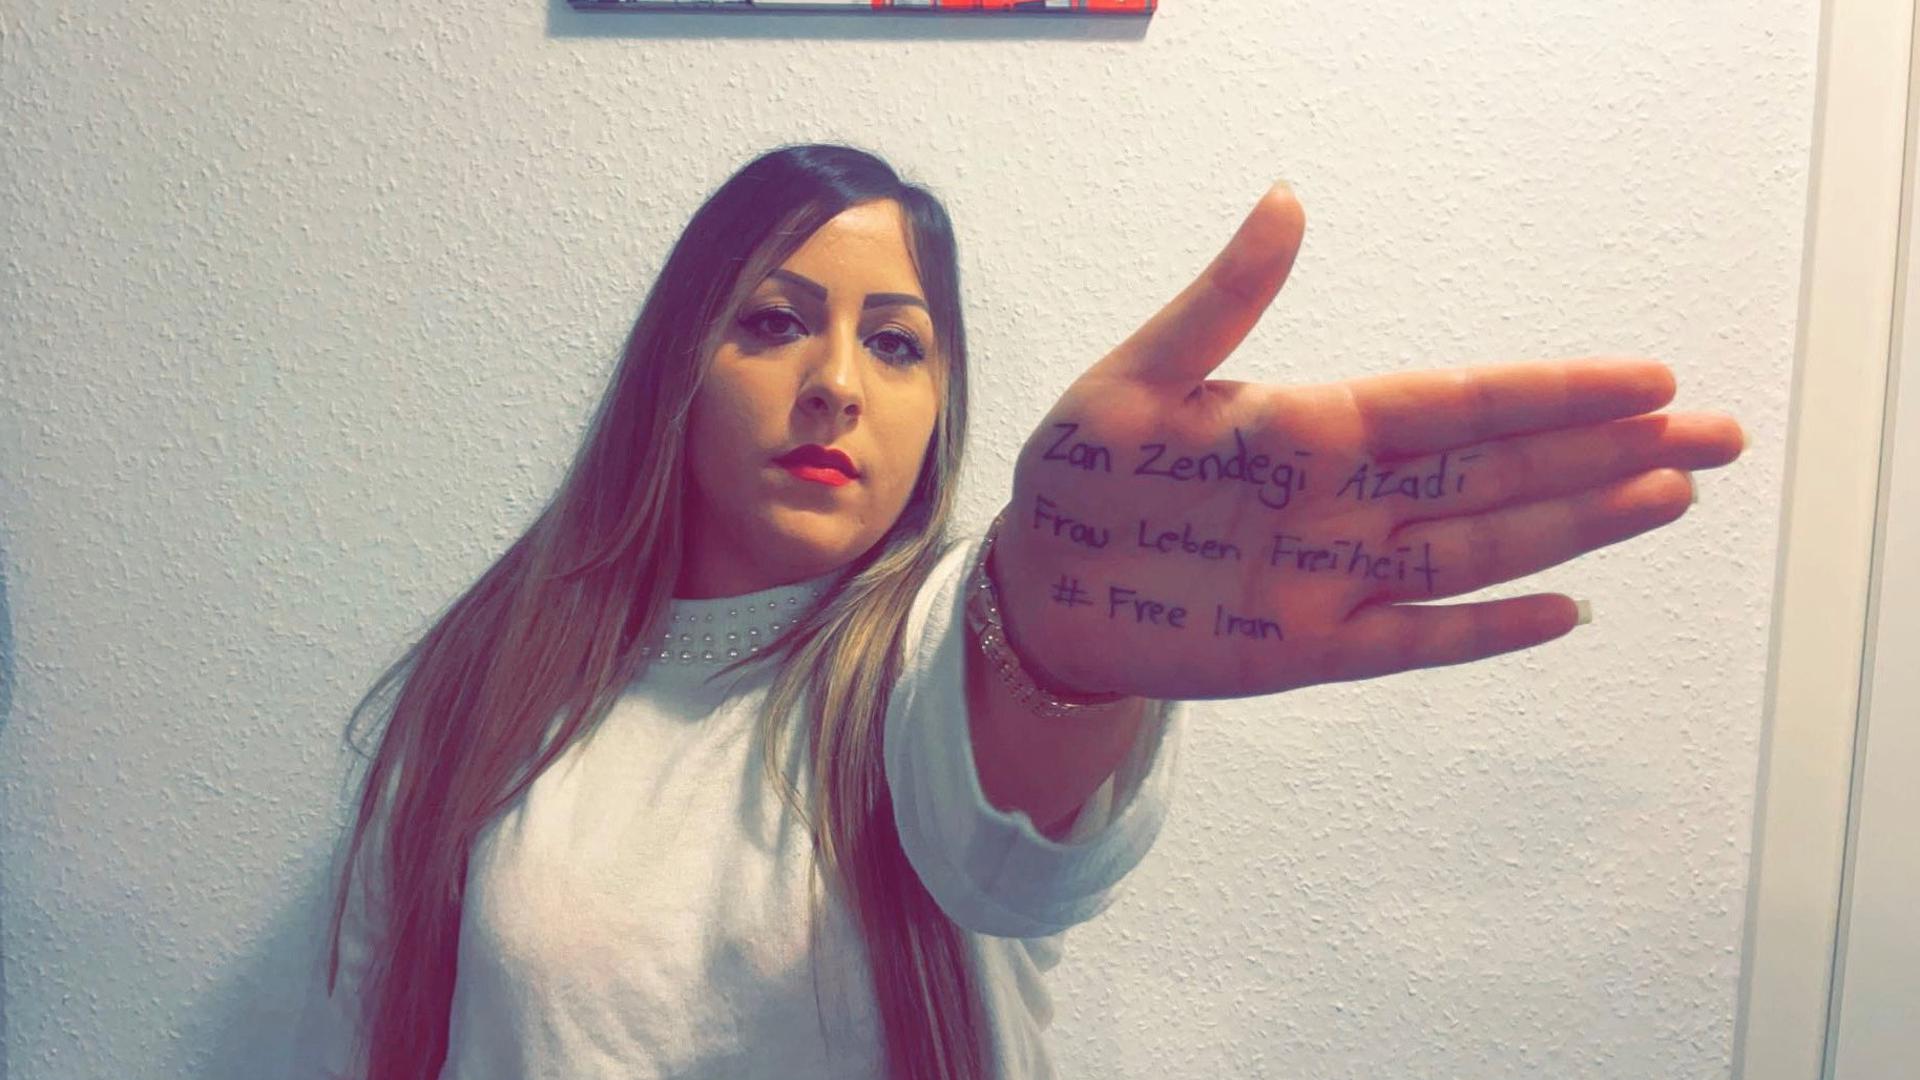 Frau, Leben, Freiheit: Auf ihre Handflächen hat Mona Langroodi die Schlagworte der Protestbewegung geschrieben, die seit Mahsa Aminis Tod von Protestierenden im Iran sowie international genutzt wird.